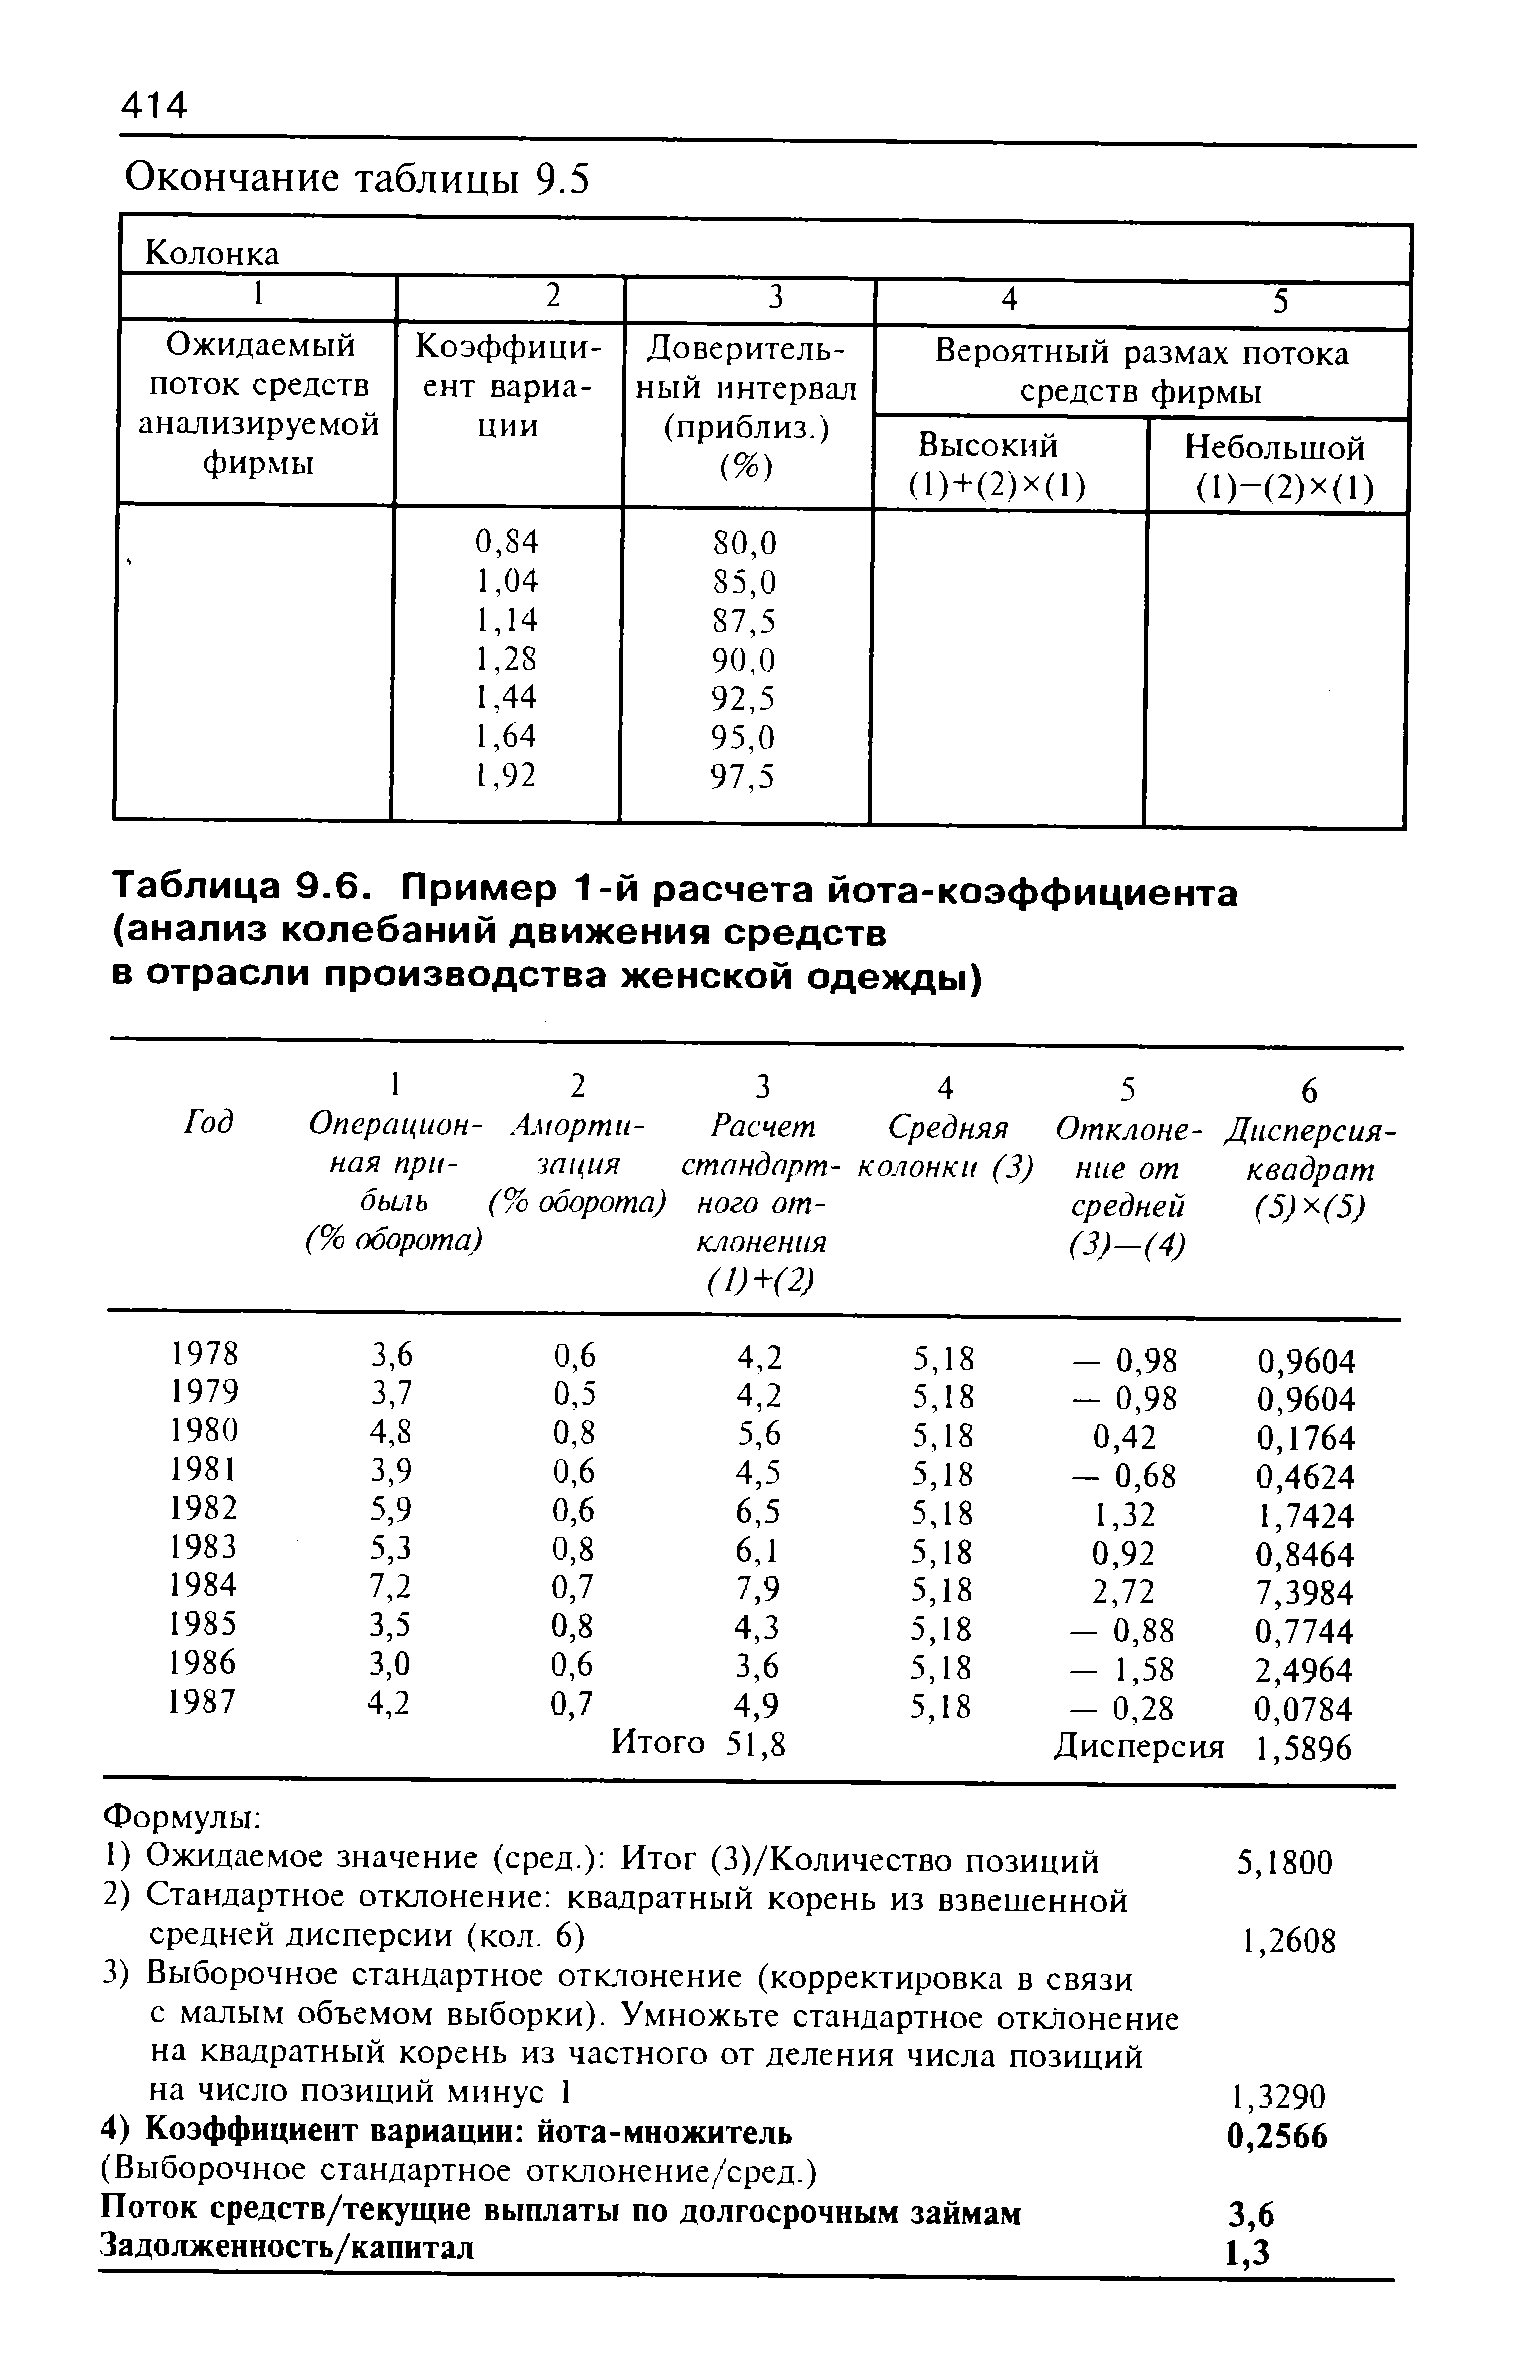 Таблица 9.6. Пример 1-й расчета йота-коэффициента
